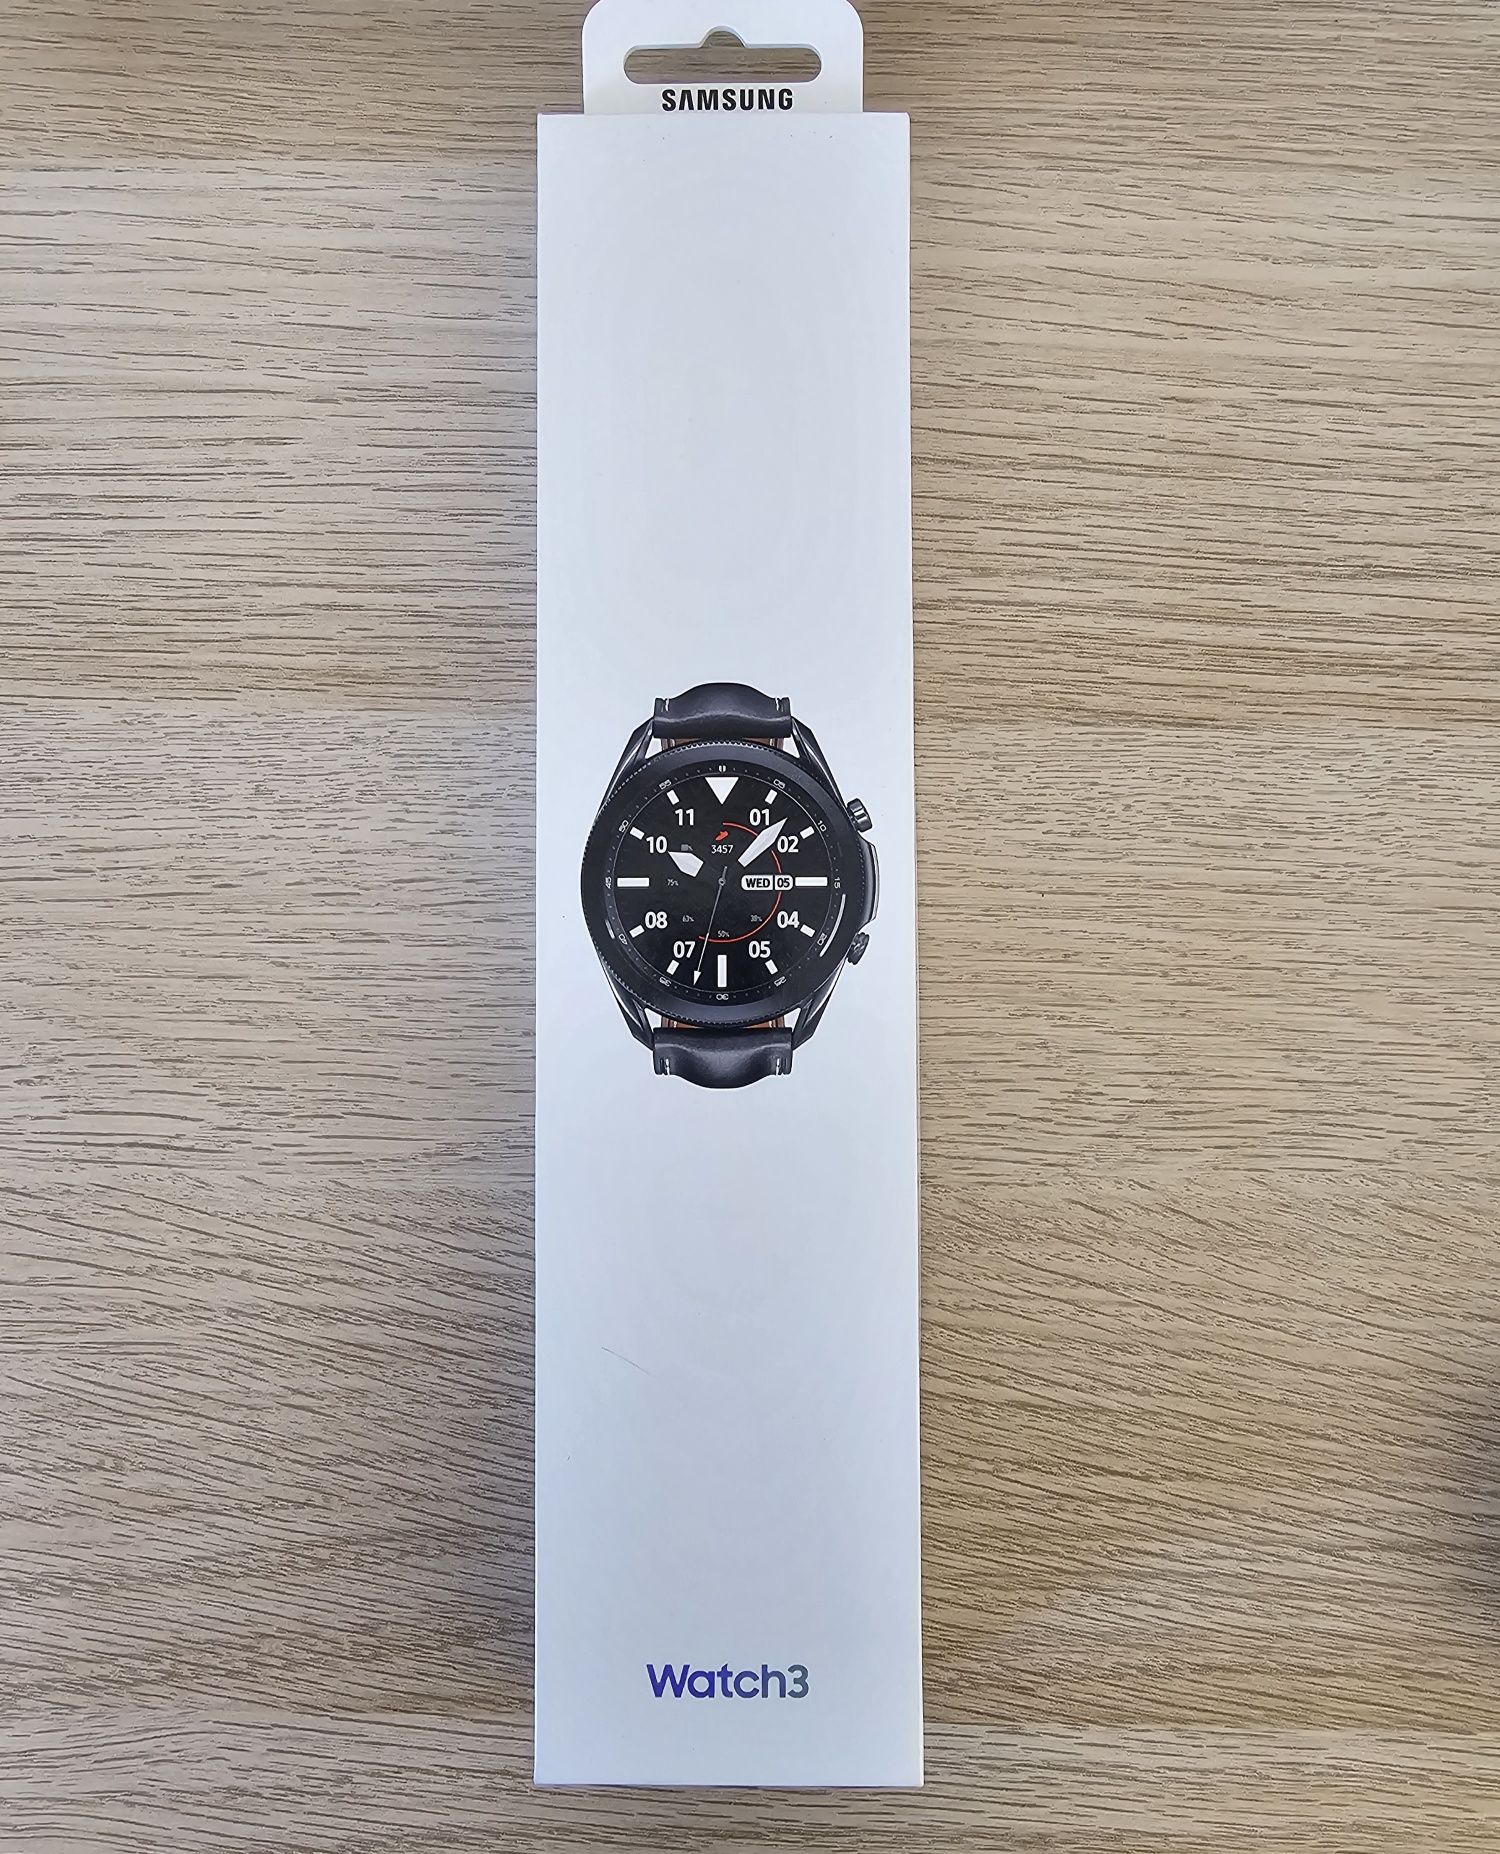 Samsung Galaxy watch 3 - Excelente estado